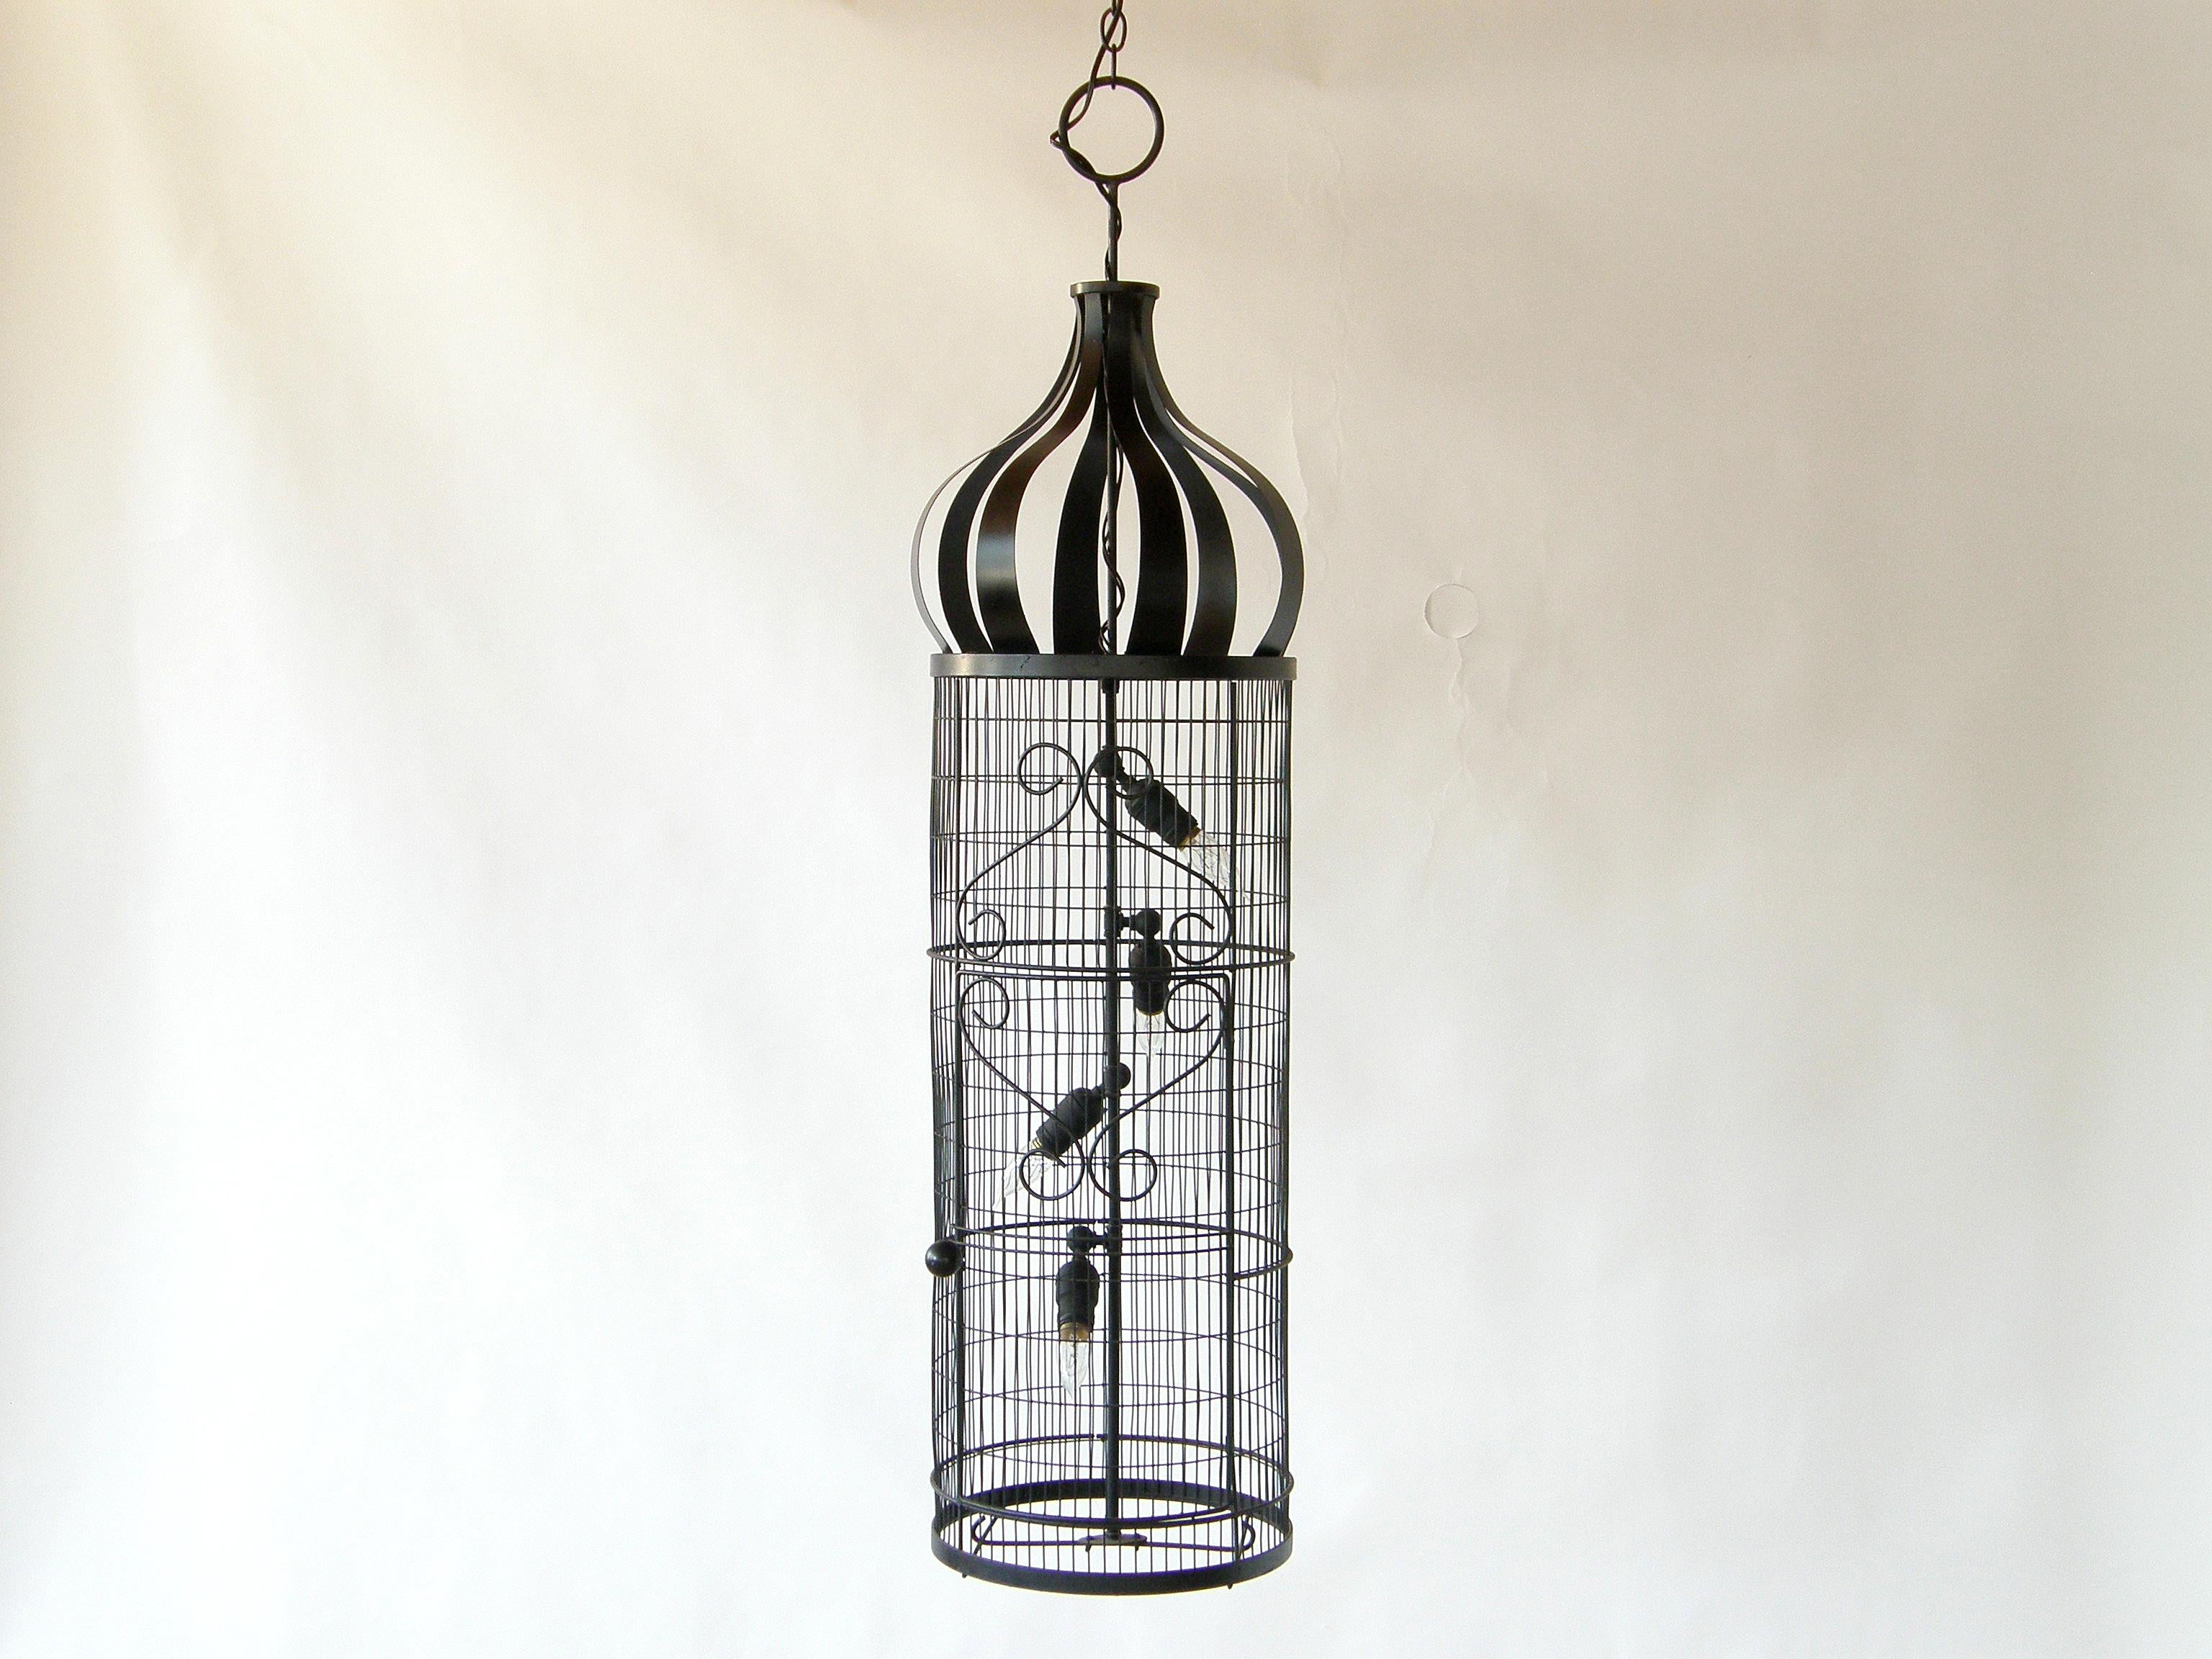 Ce luminaire suspendu en forme de cage d'oiseau a été conçu à l'origine par Frederic Weinberg comme une jardinière. Une légère variante de ce modèle était également disponible sous forme de cage à oiseaux, mais je n'ai trouvé aucune référence au